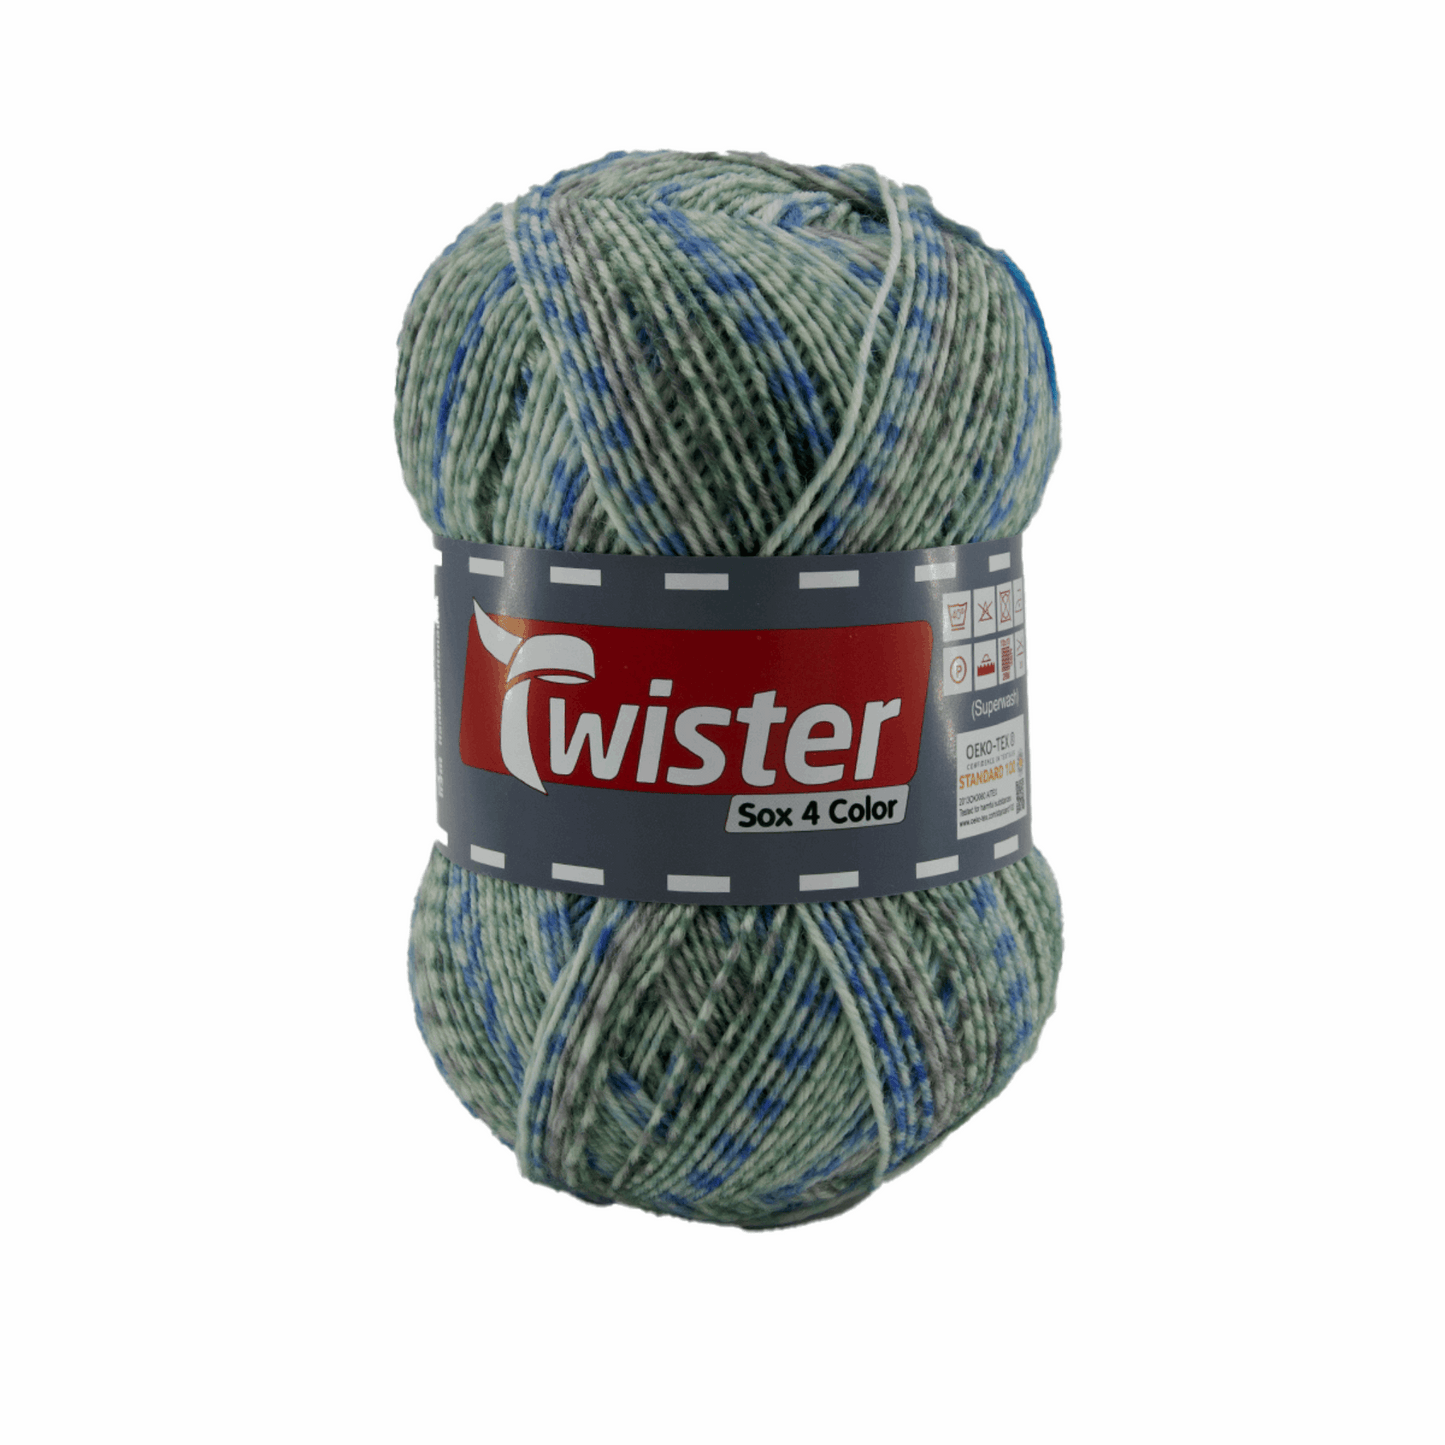 Twister Sox4 Color superwash, blau grün grau, 98306, Farbe 821